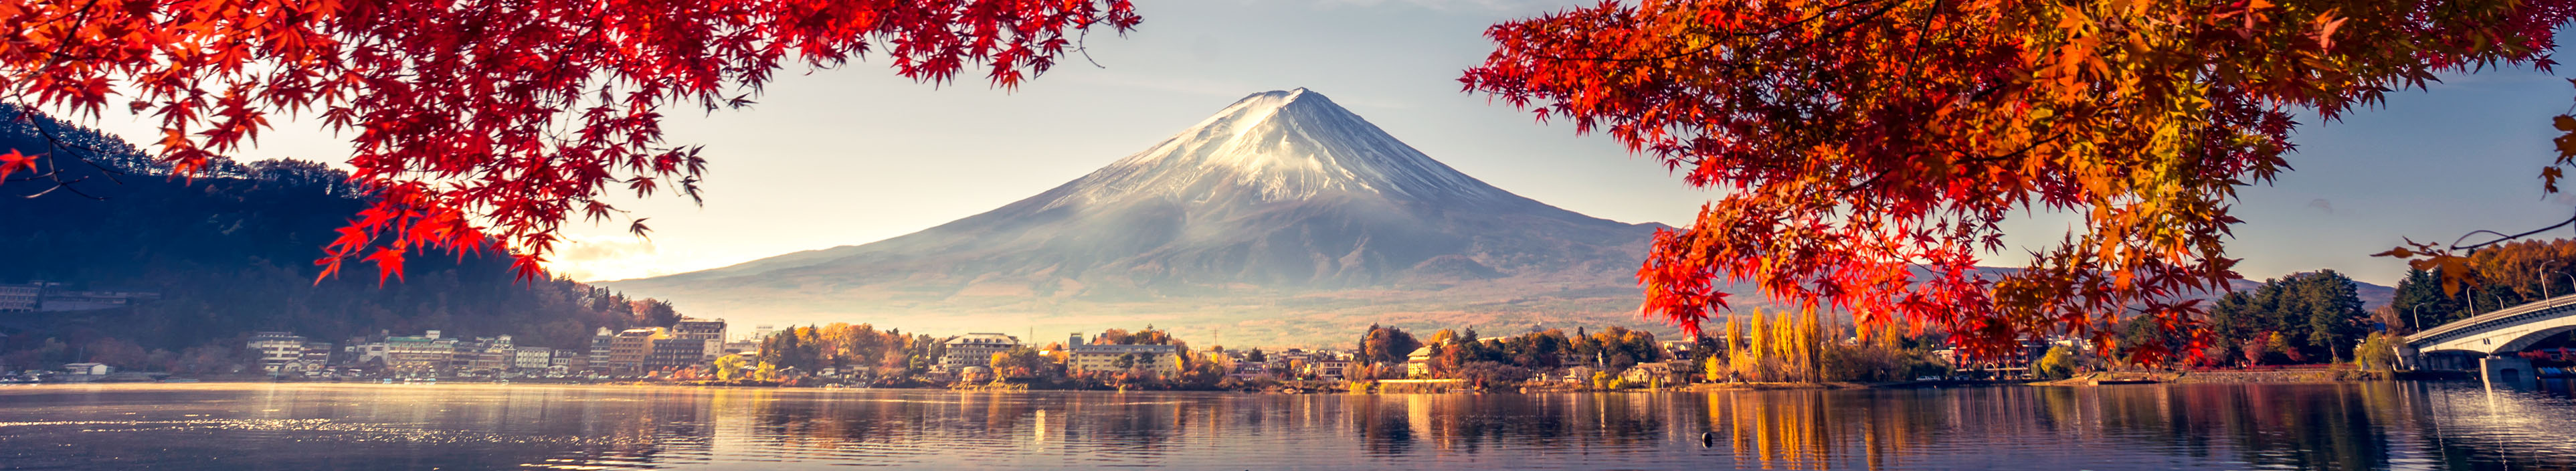 Malerischer Fluss im Herbst vor Fuji Vulkan, in Japan.